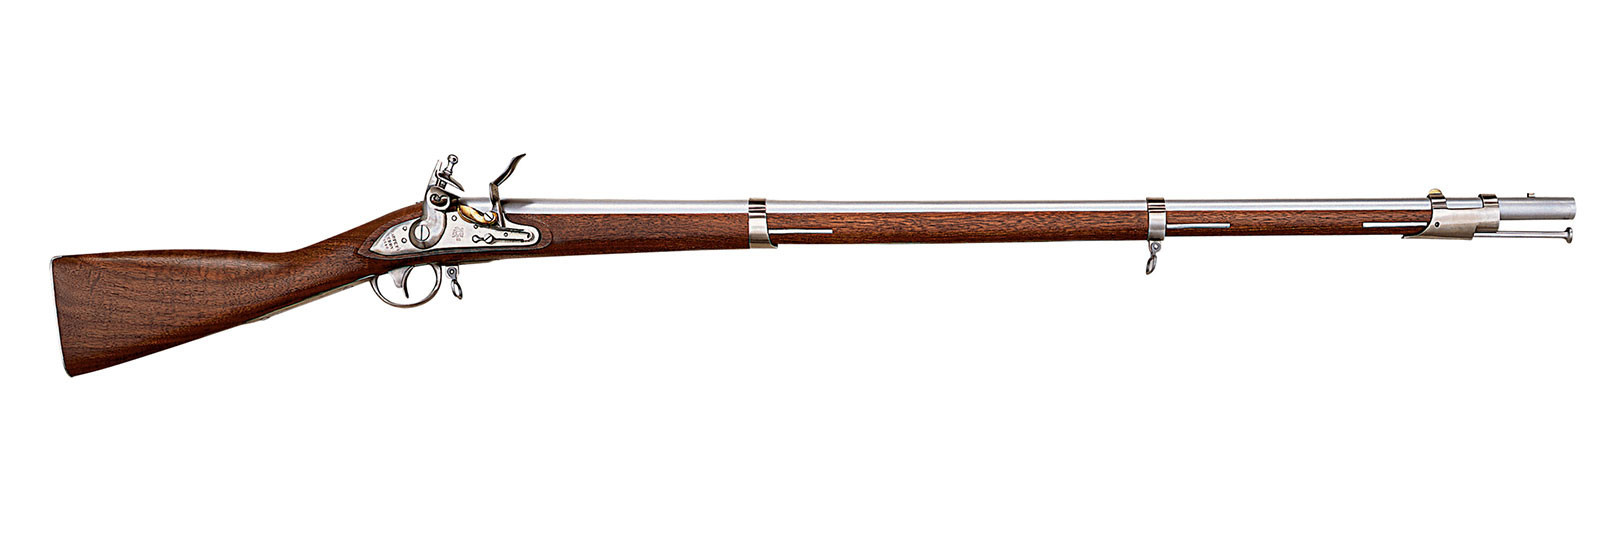 1816 Harper's Ferry Rifle flintlock model